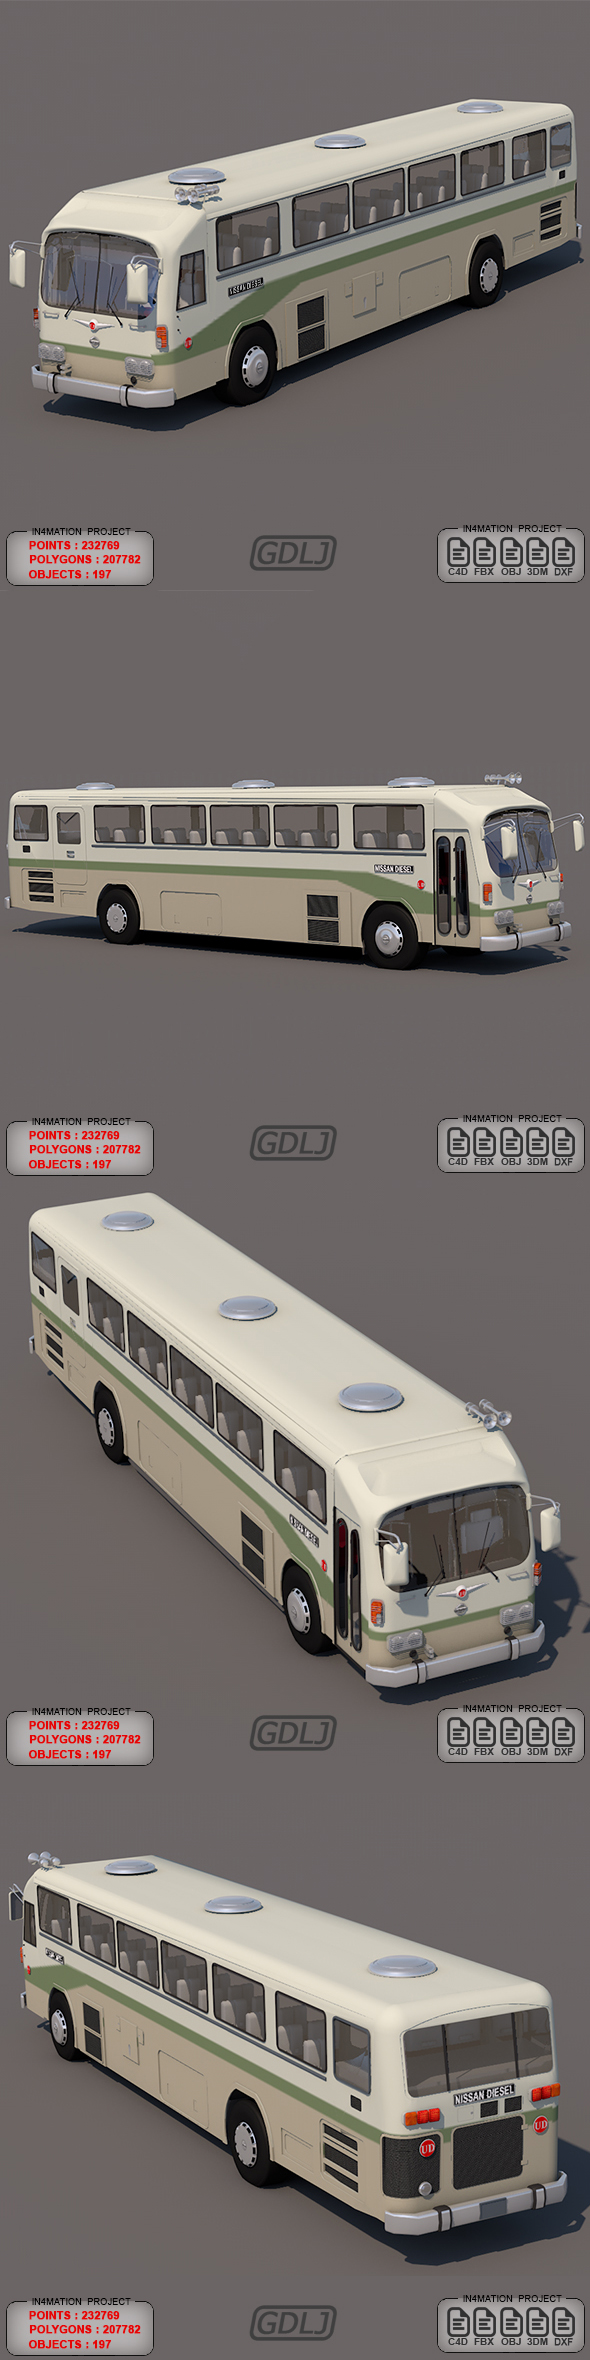 Nissan Diesel Bus - 3Docean 21835682